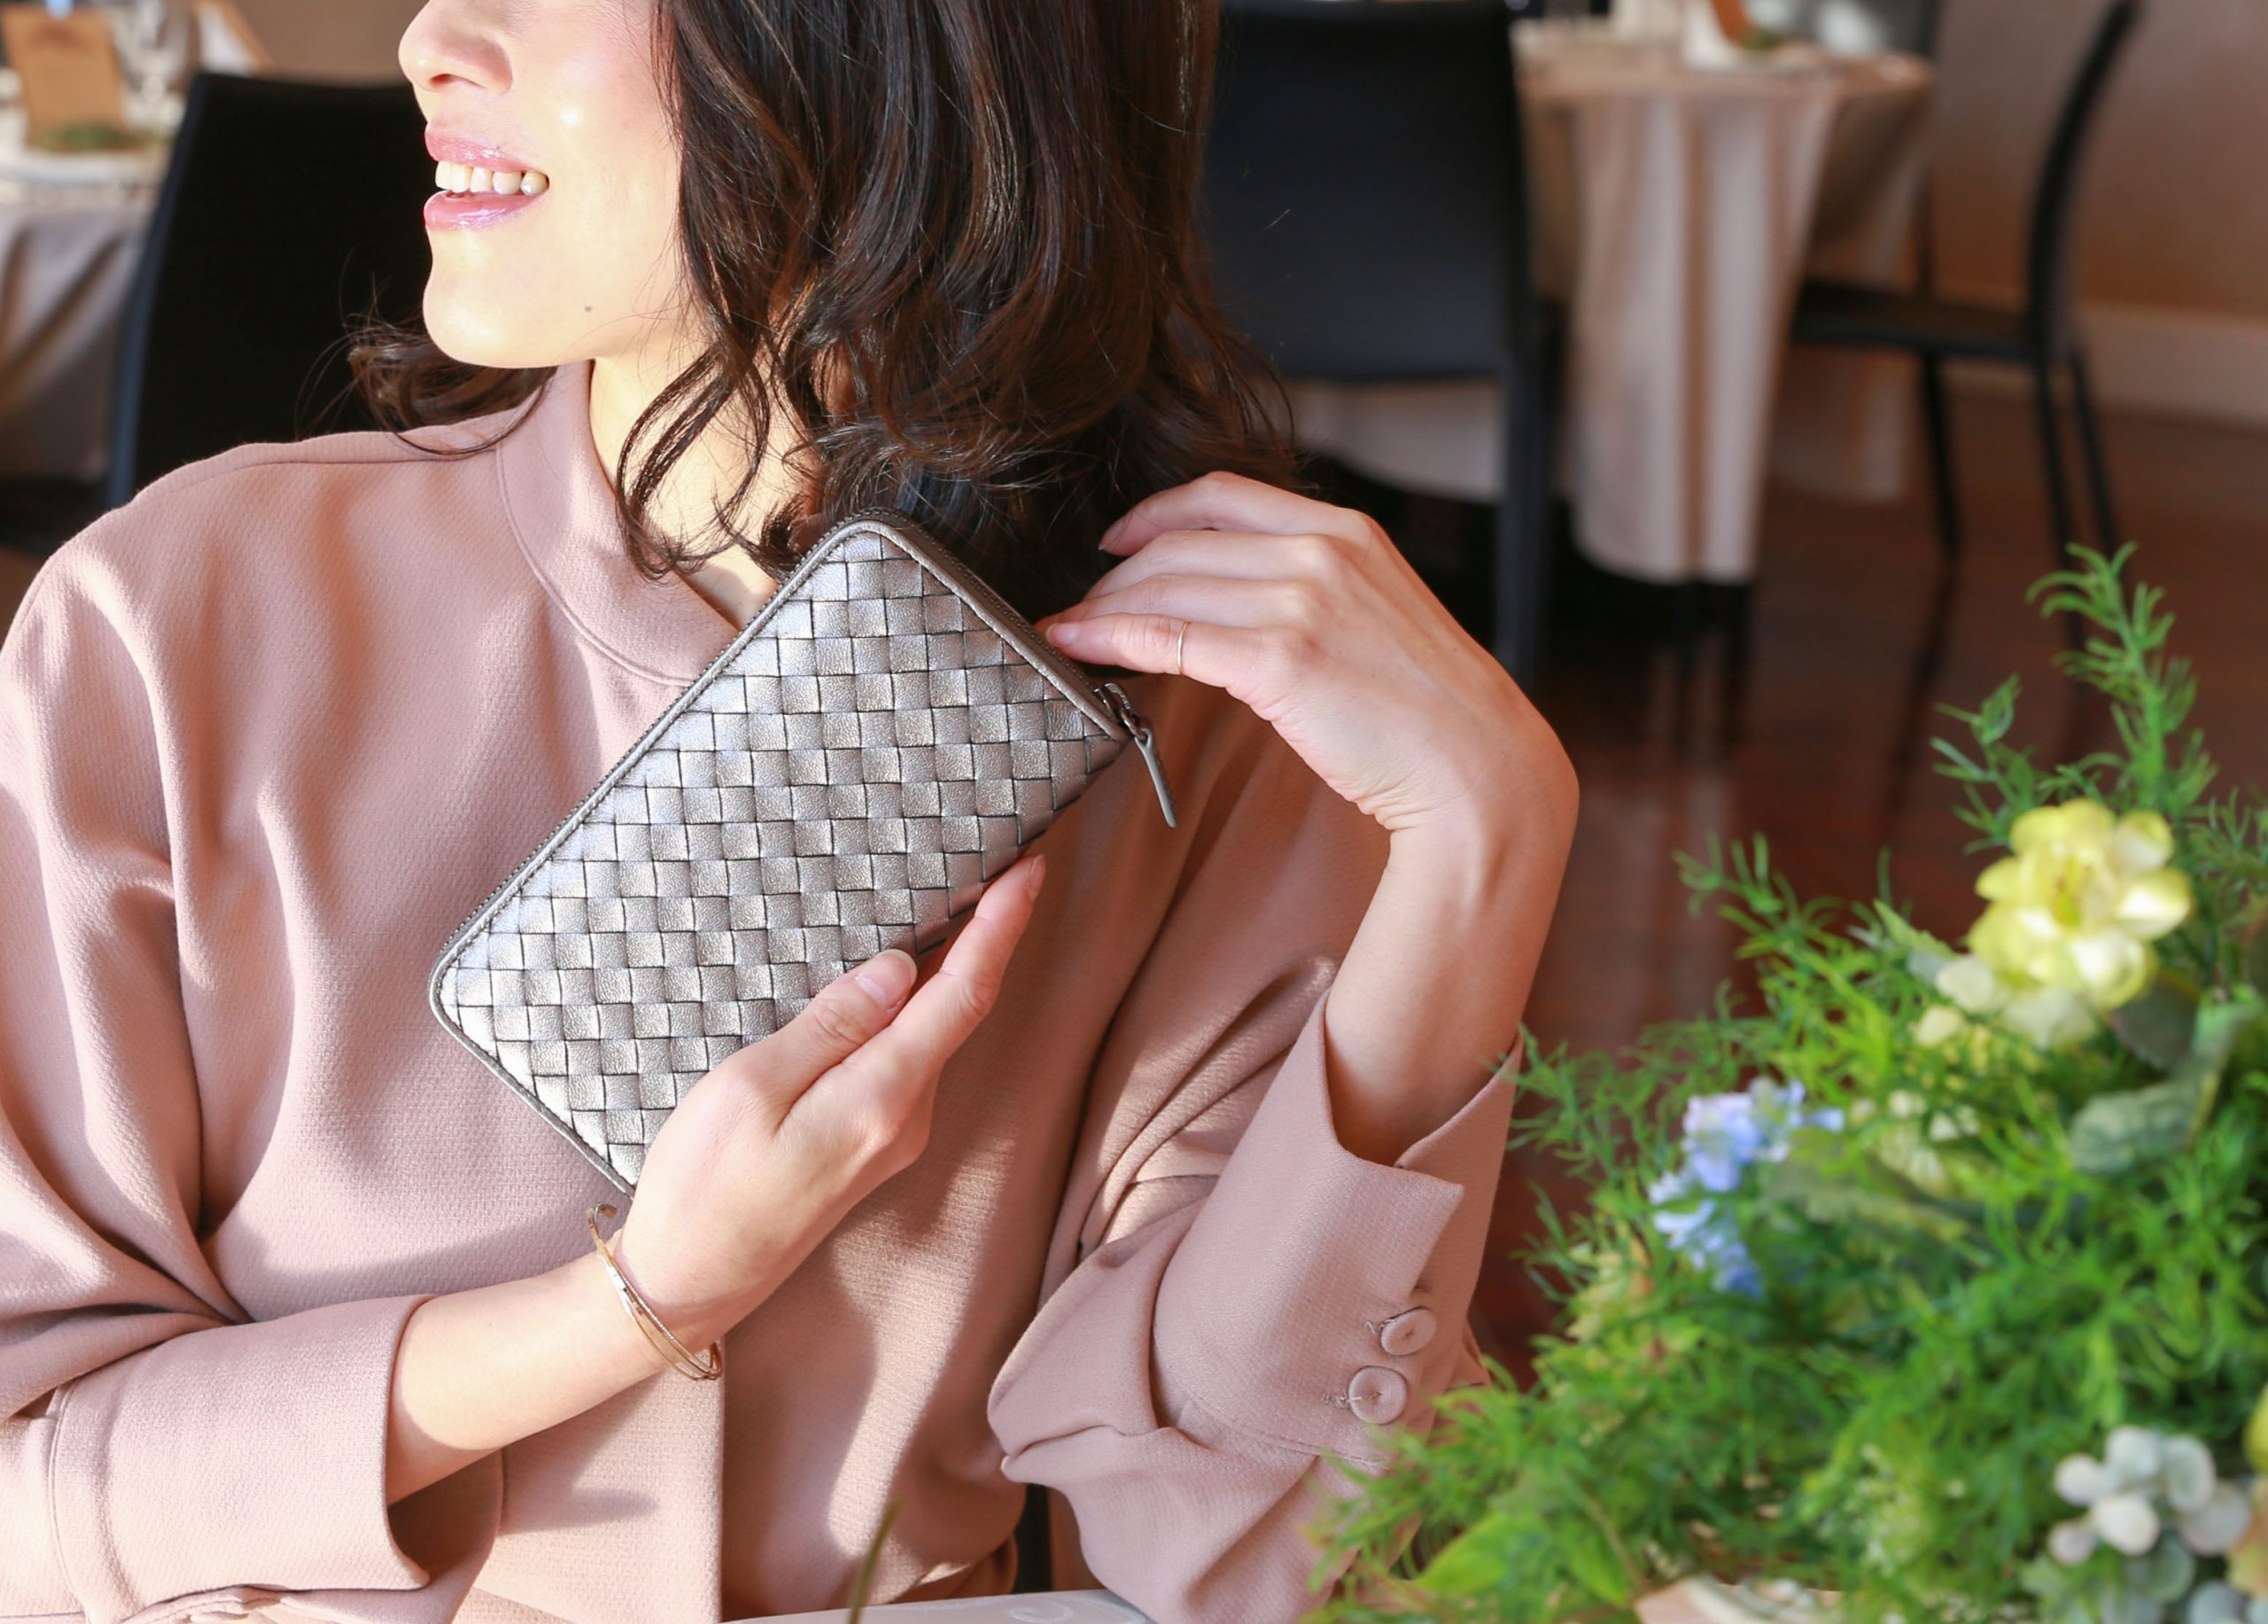 最新 30代女性に人気のお財布特集 可愛いから上品まで おすすめのお財布とブランドをご紹介します